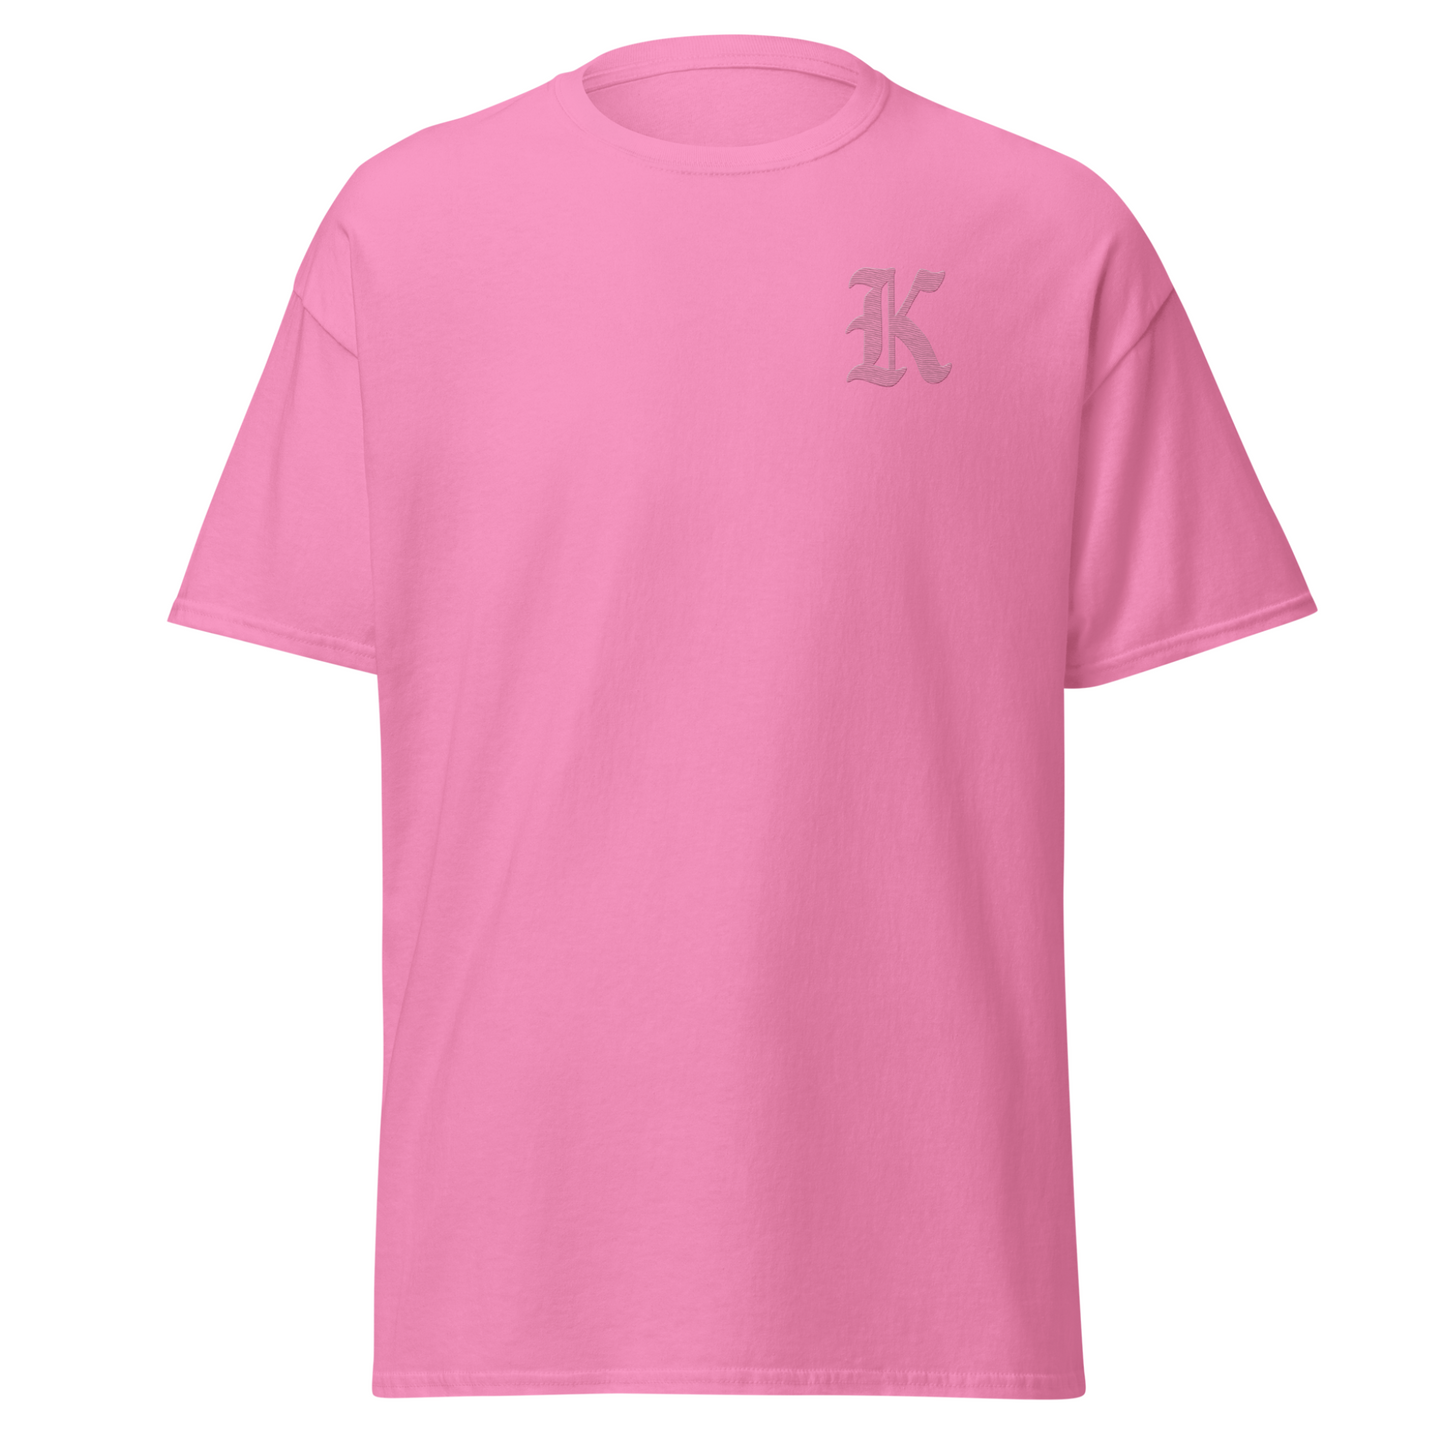 Dept. of Kenergy Shirt in Pink